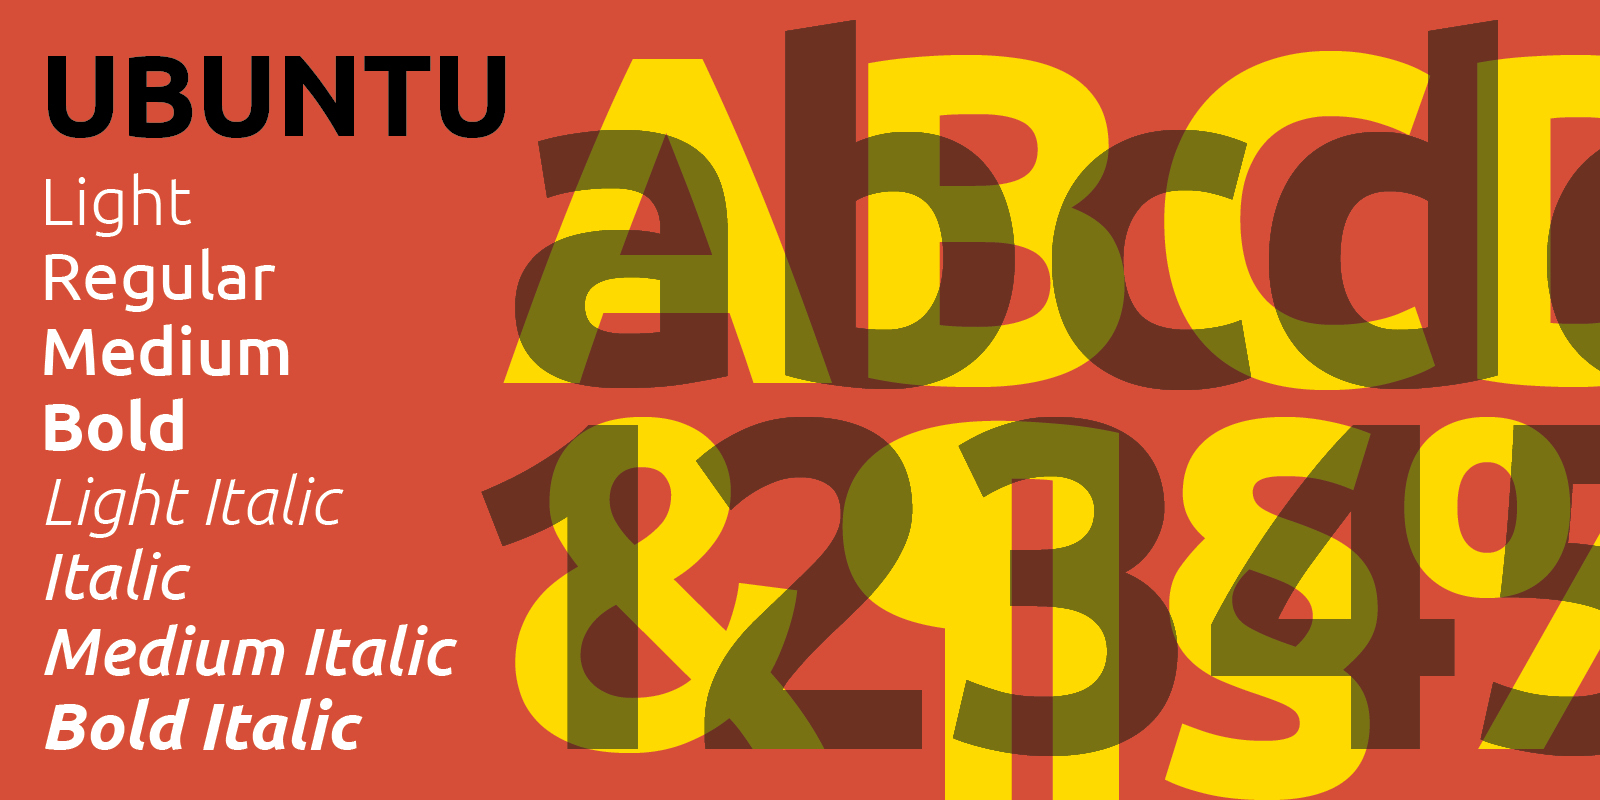 Card displaying Ubuntu typeface in various styles